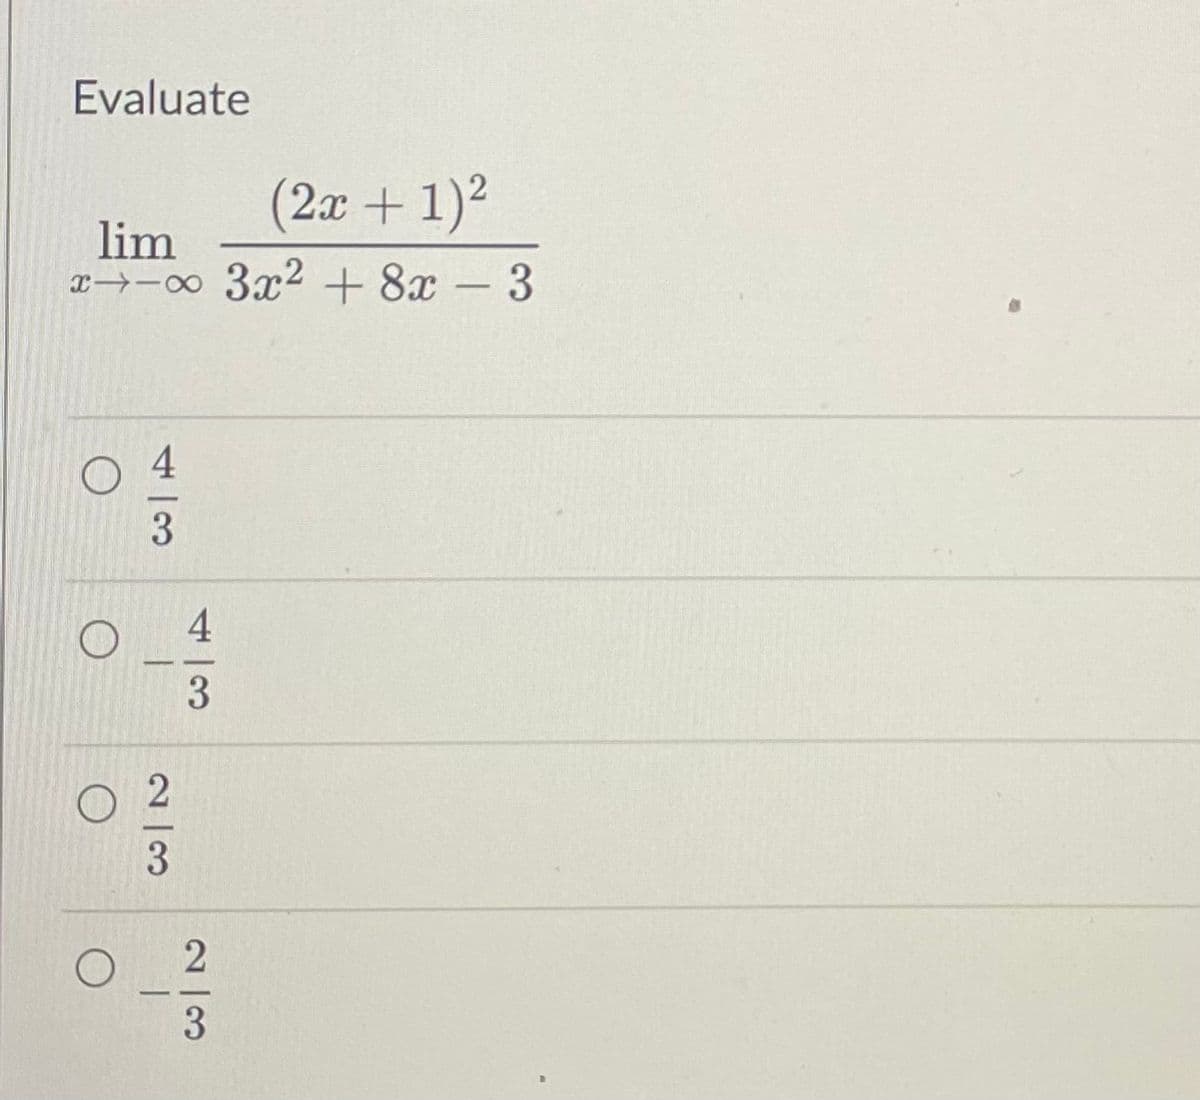 Evaluate
(2x + 1)²
lim
xx 3x² + 8x - 3
3
O
1
23
جر | مع
4
O 2
3